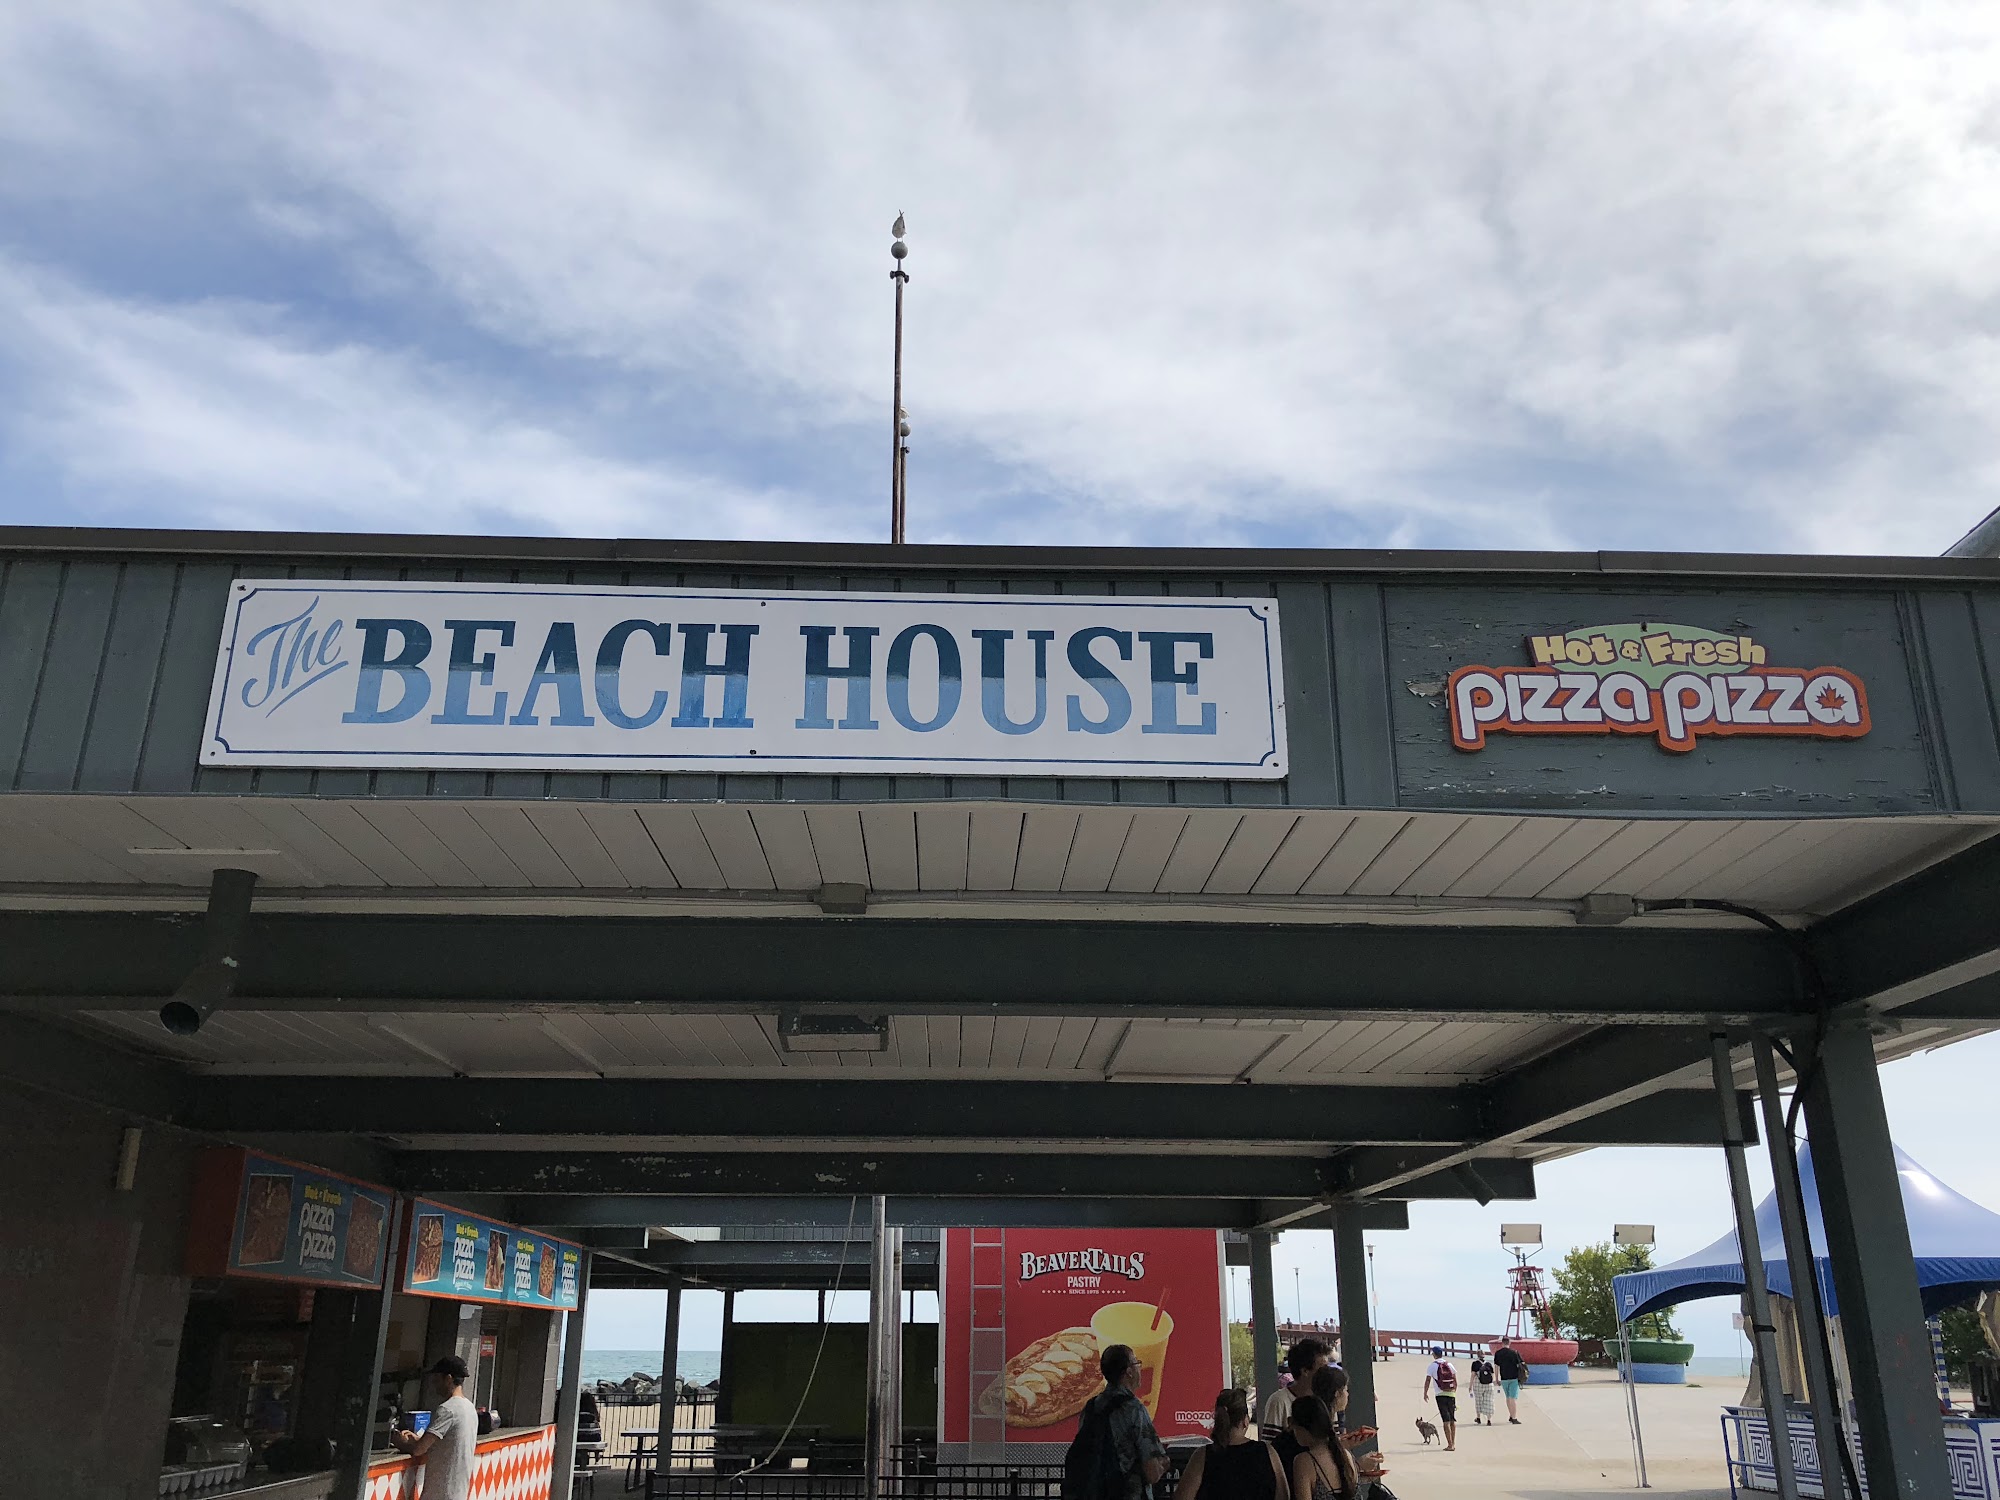 Pizza Pizza - Summer Location